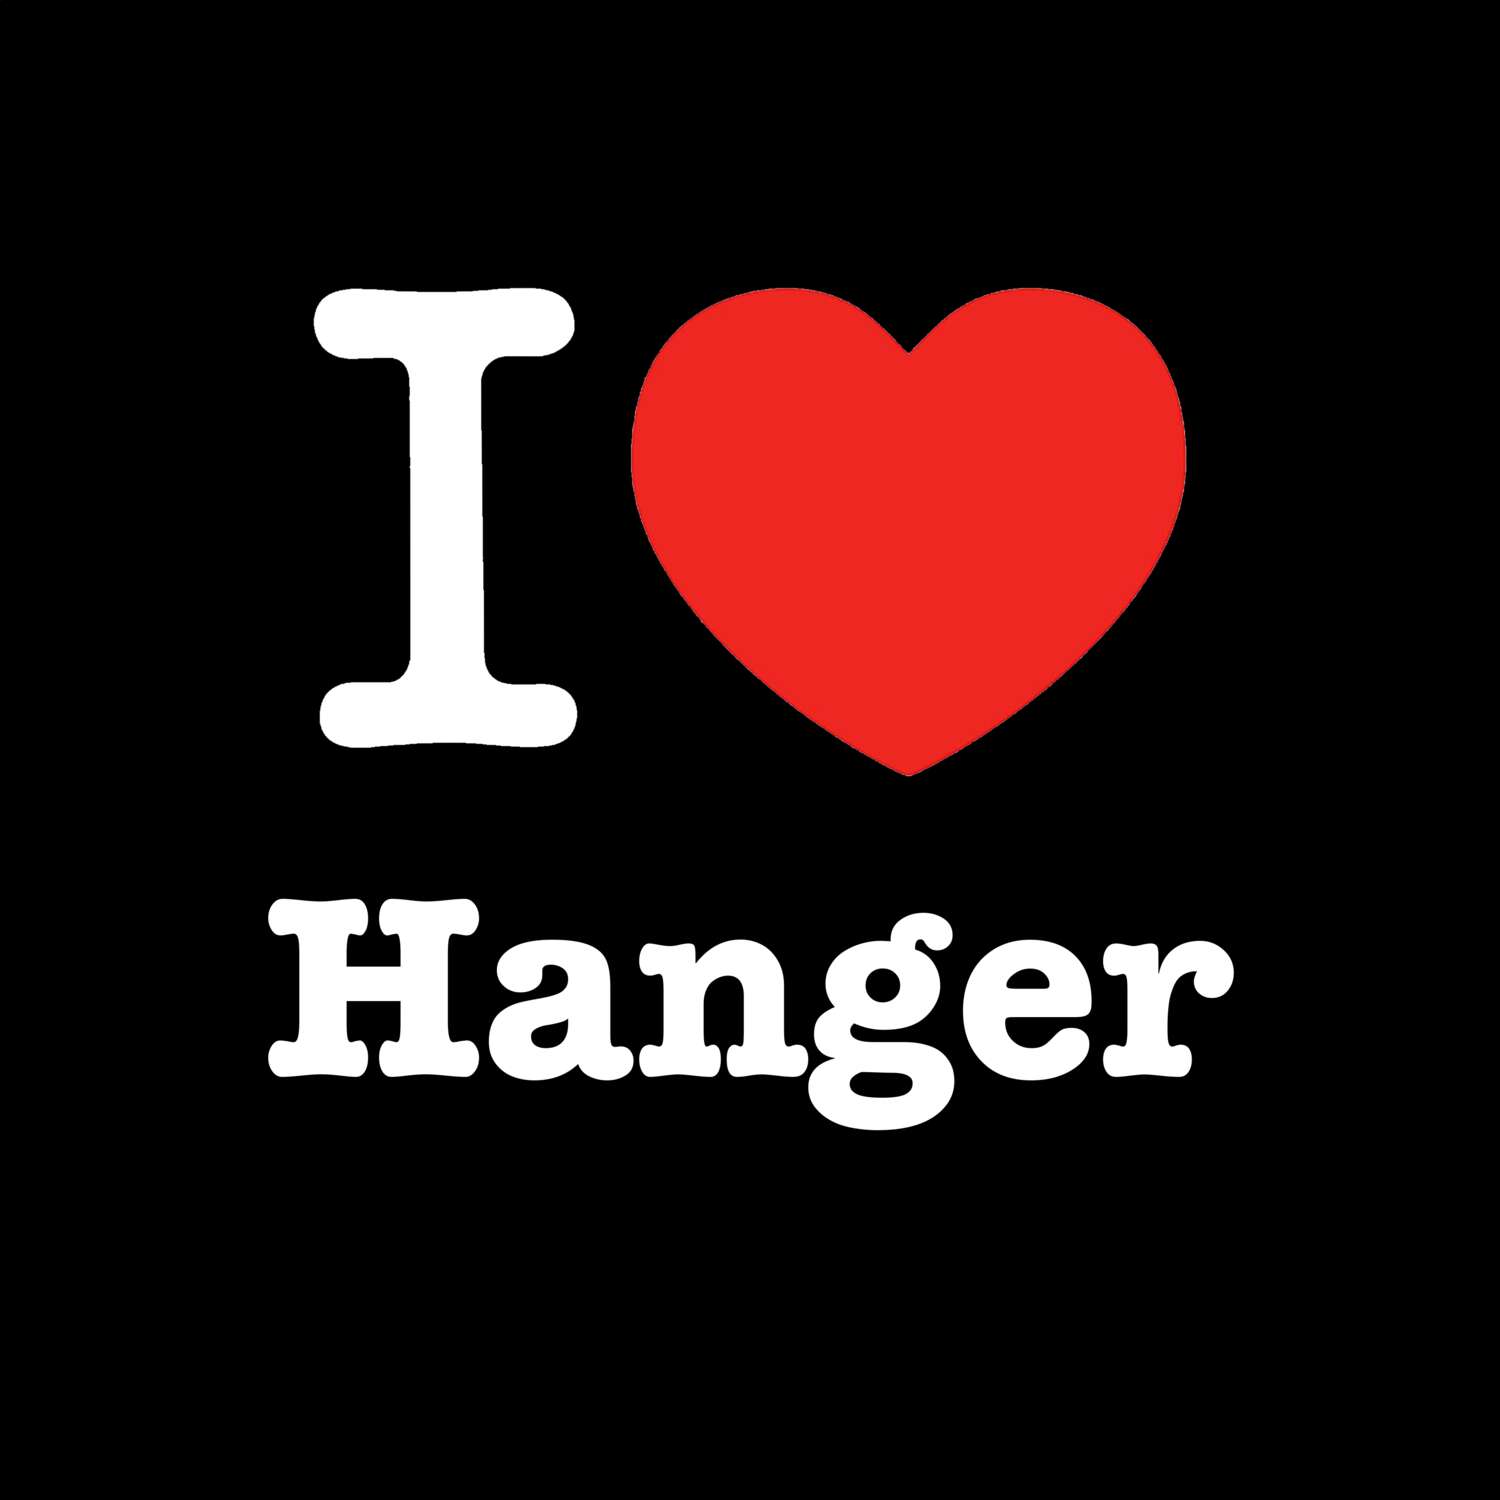 Hanger T-Shirt »I love«